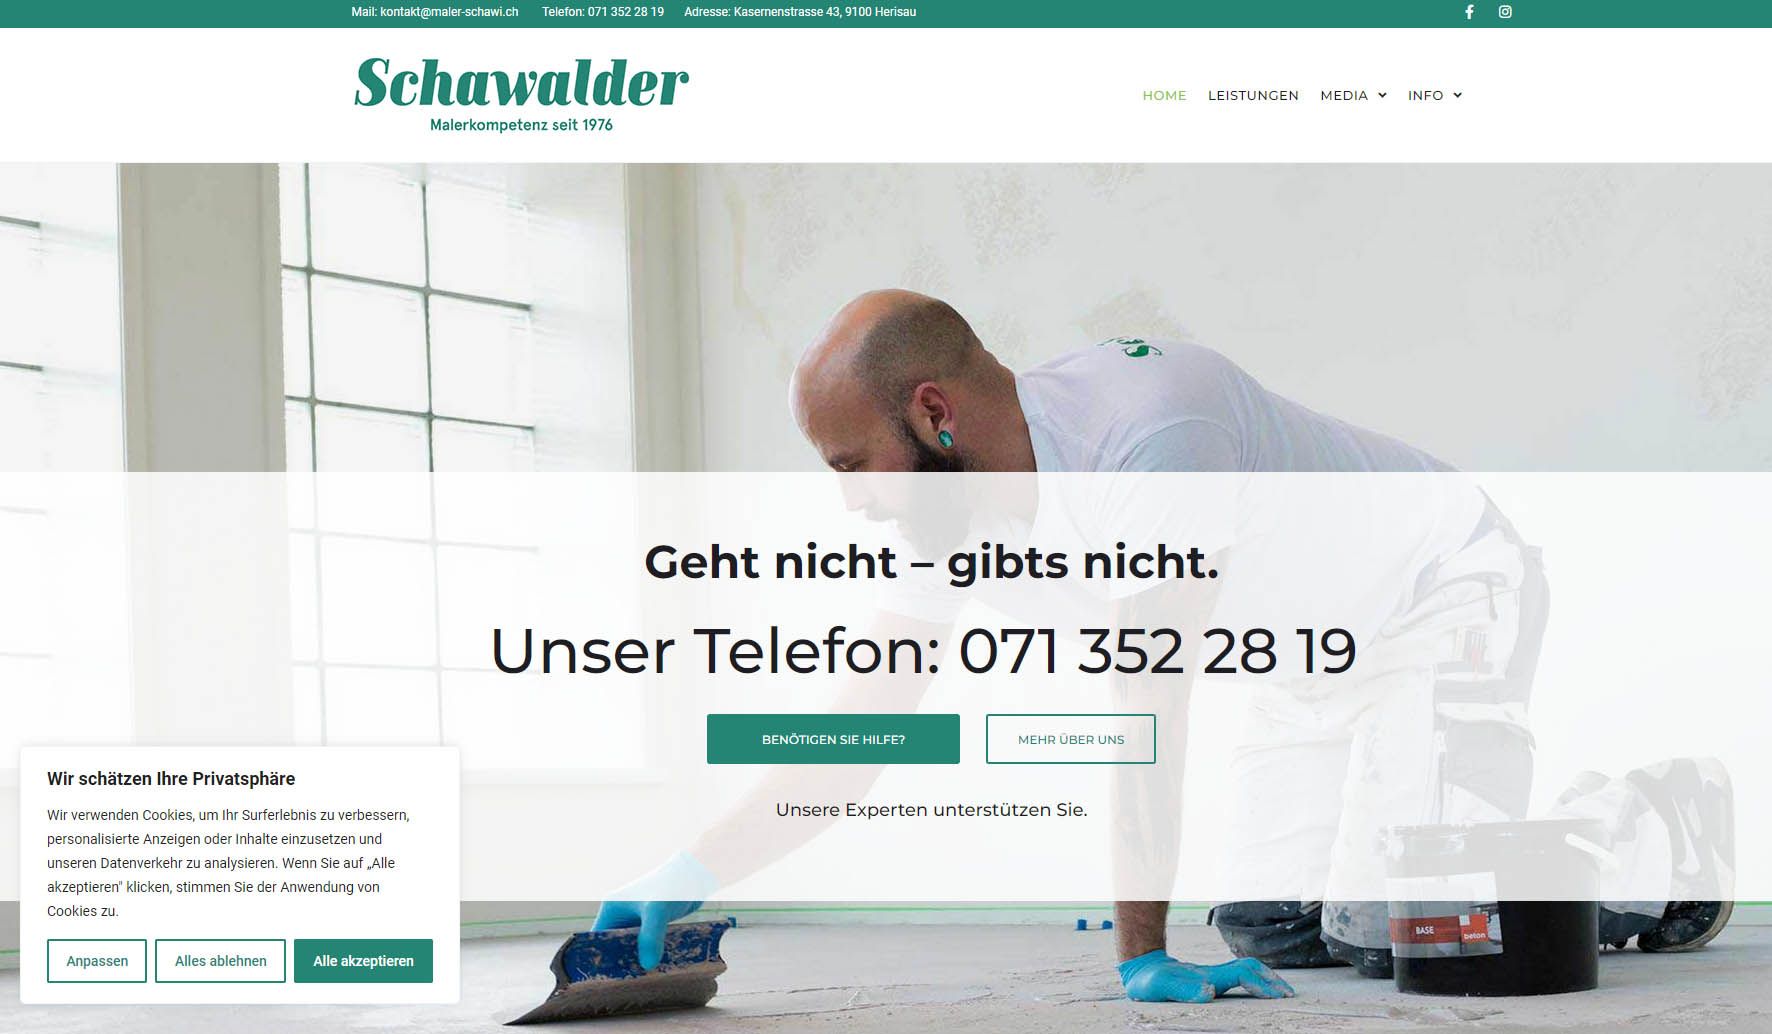 Schawalder S&S Informatik GmbH